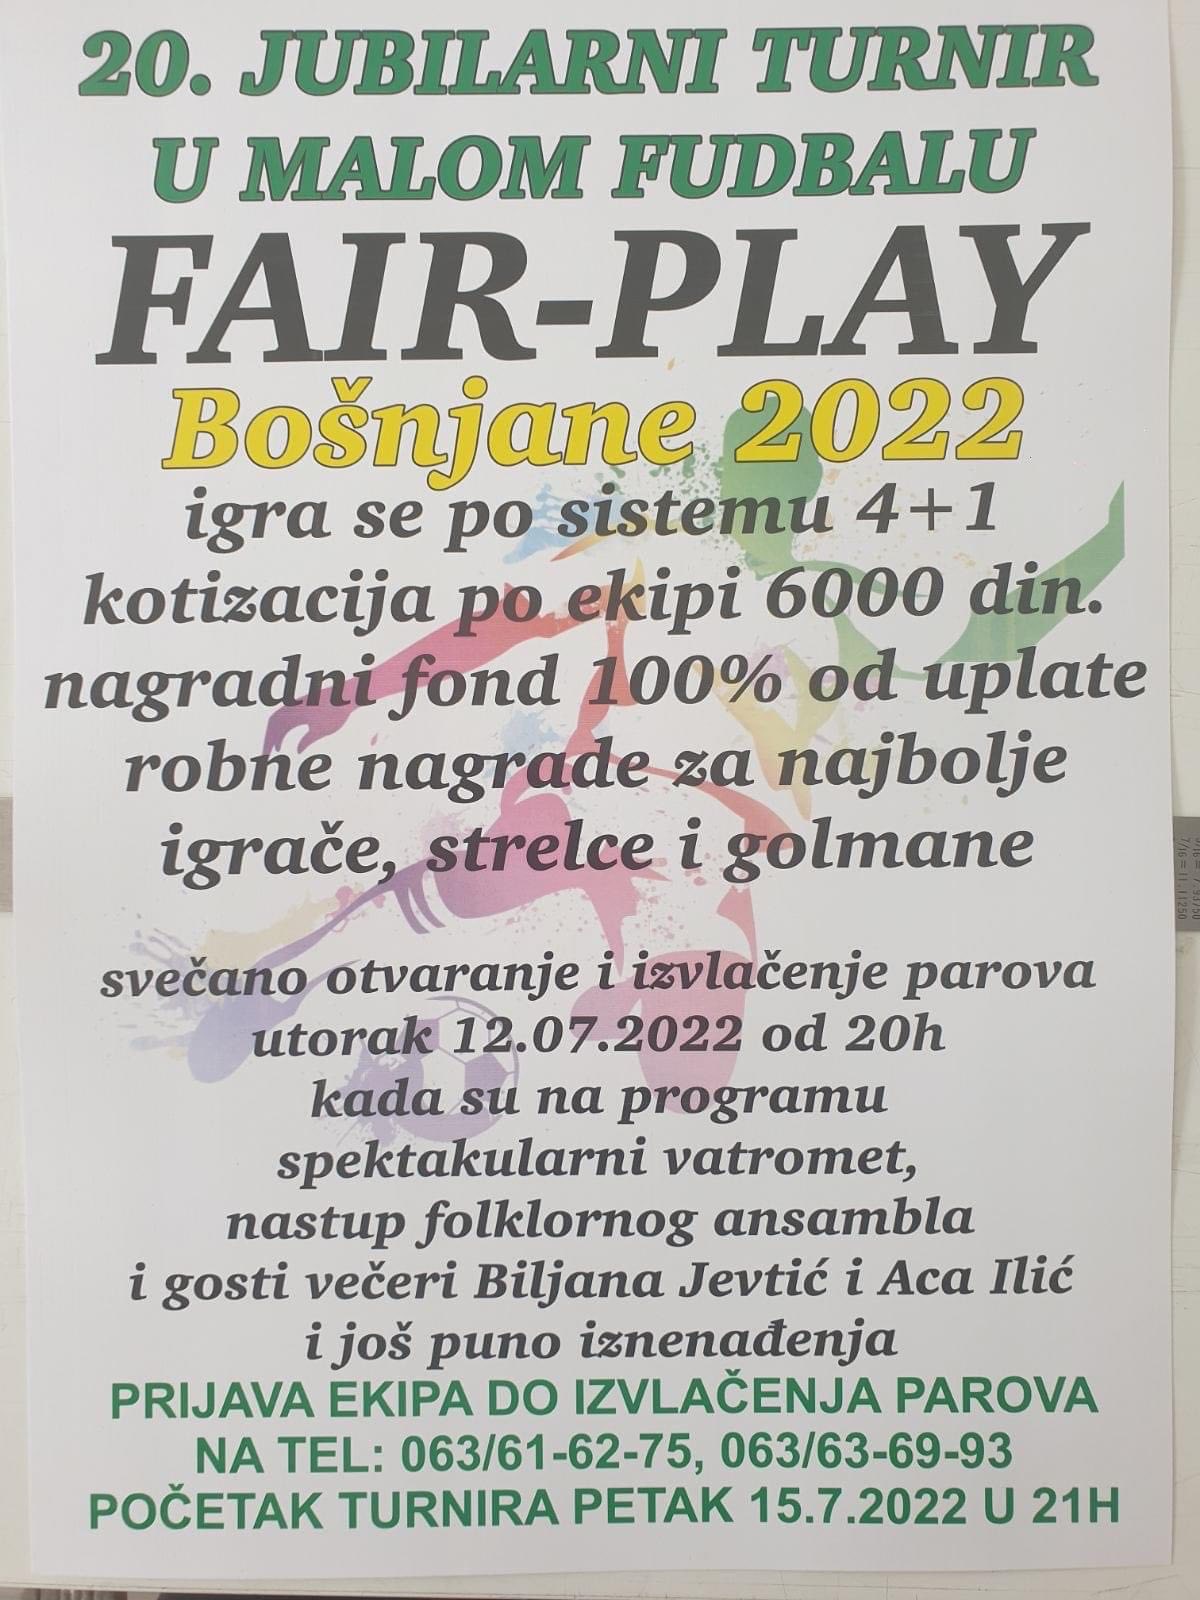 Polovinom jula počinje jubilarni 20. turnir u malom fudbalu „Fair play“ u Bošnjanu